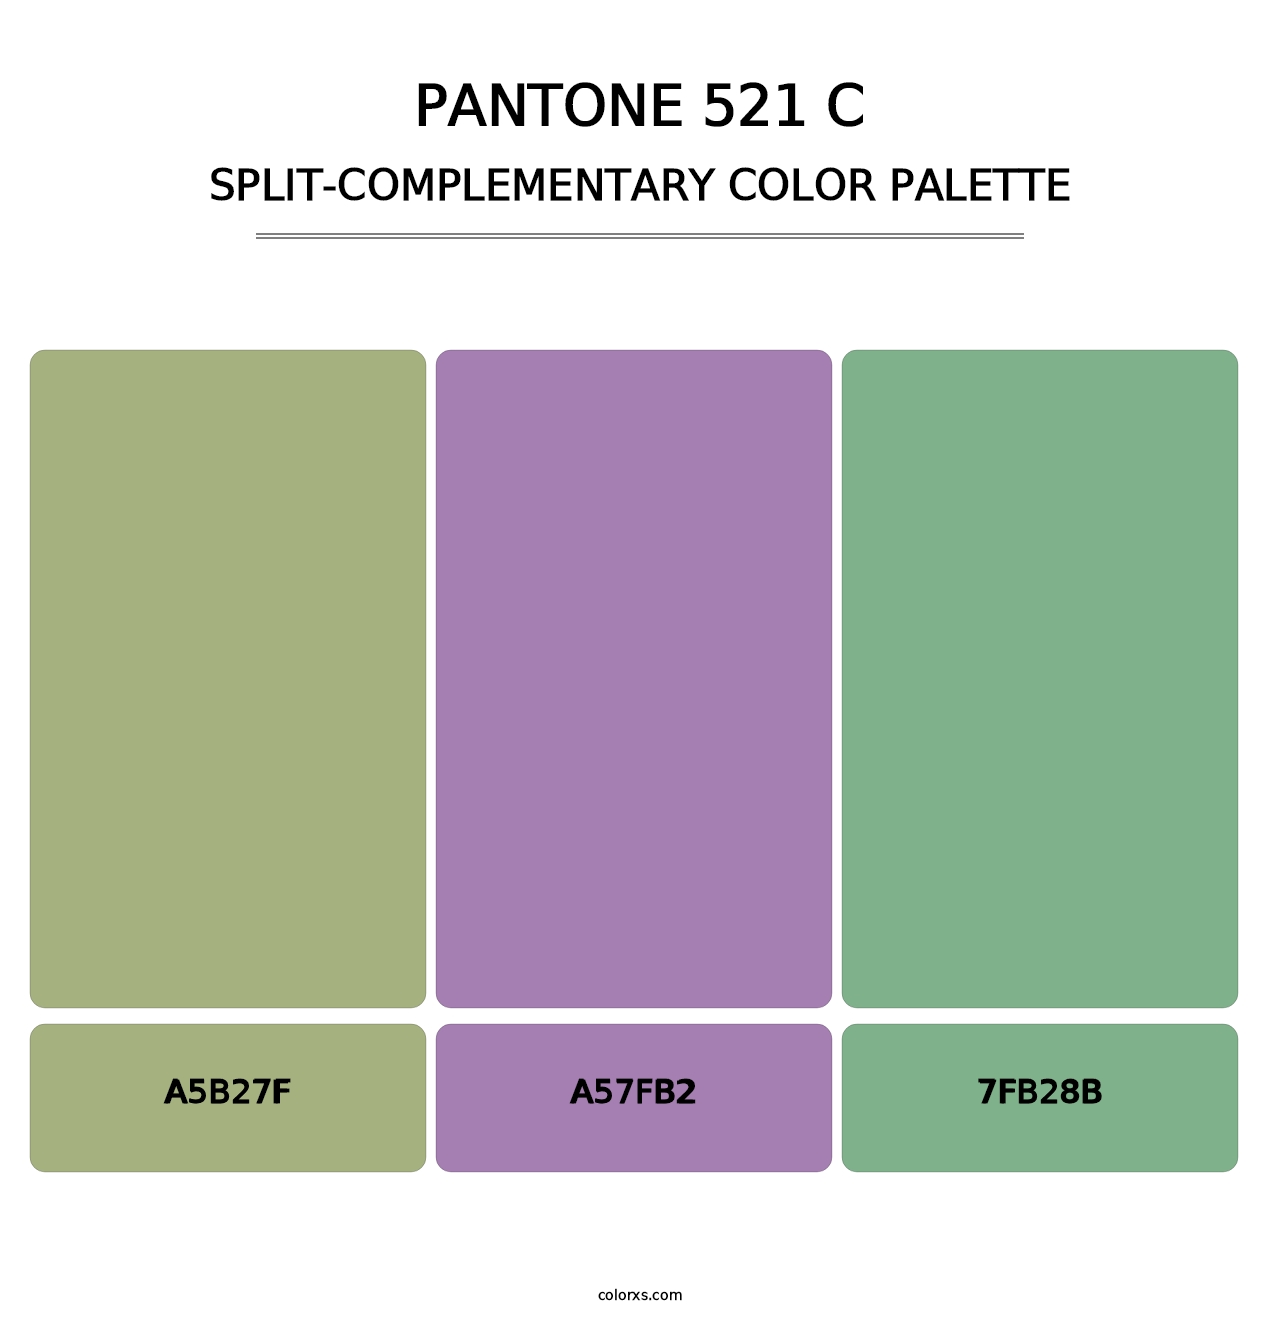 PANTONE 521 C - Split-Complementary Color Palette